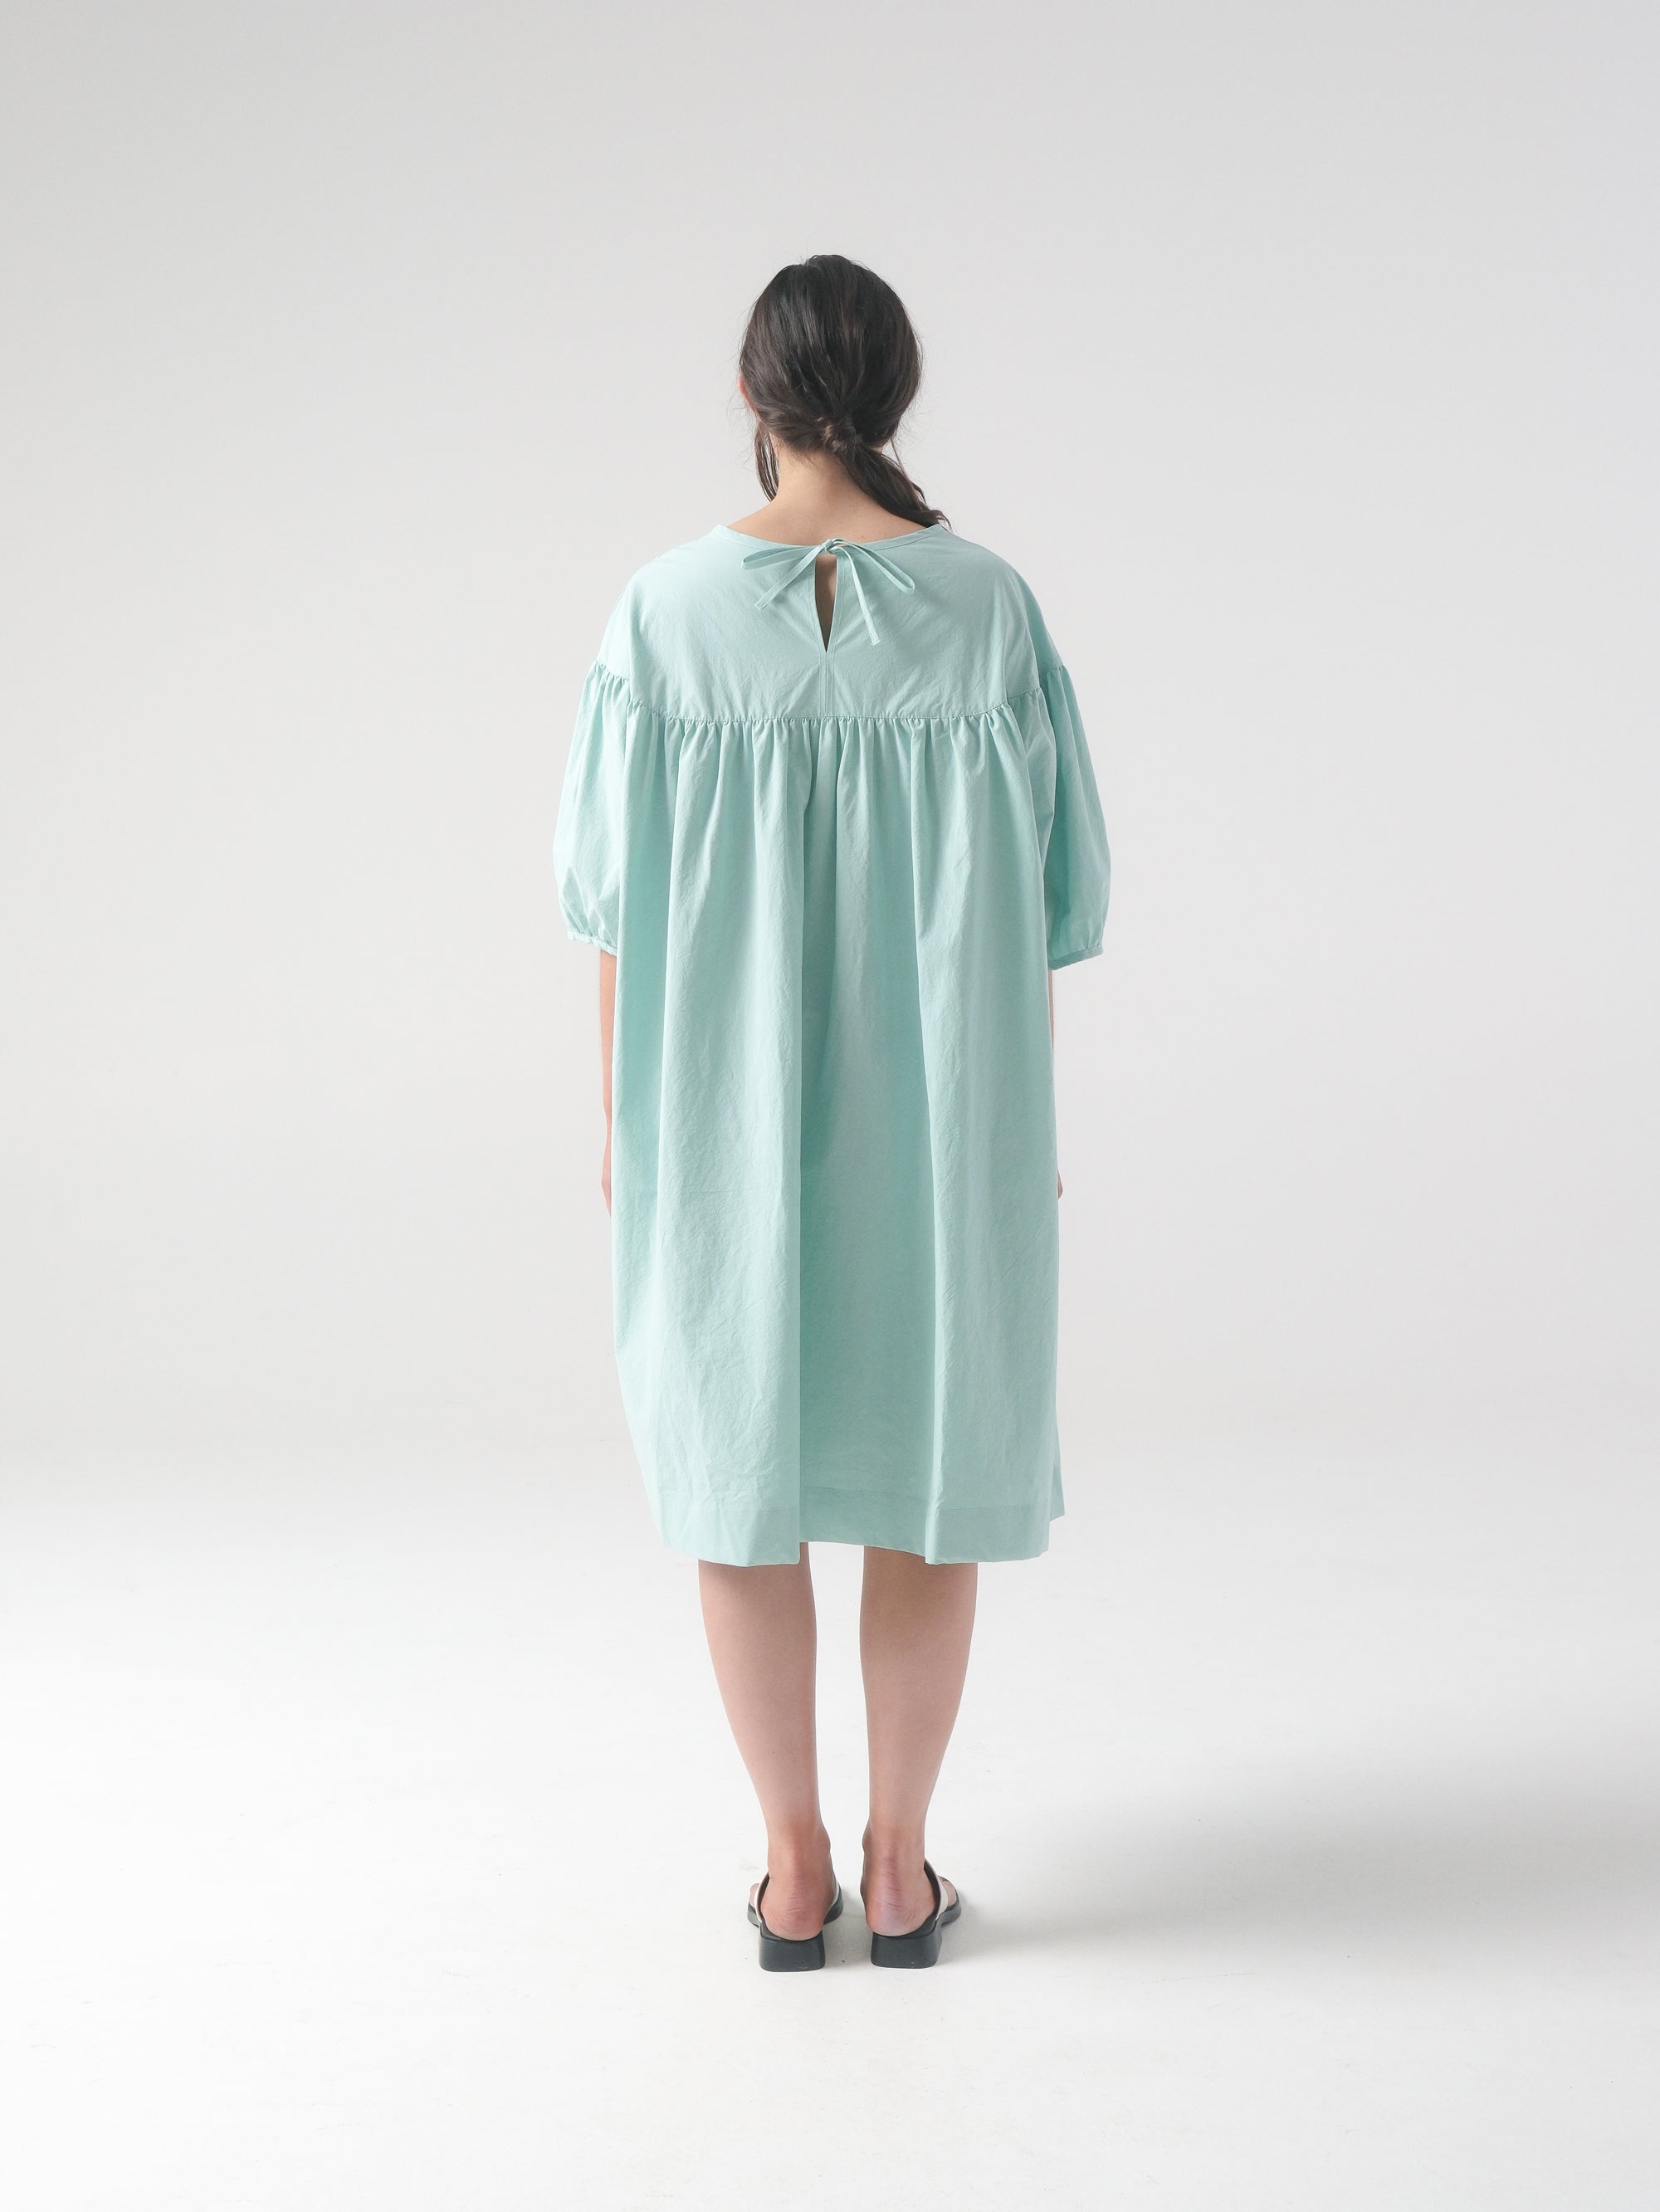 SAMPLE SALE - Pia Dress in Piscine - S/M